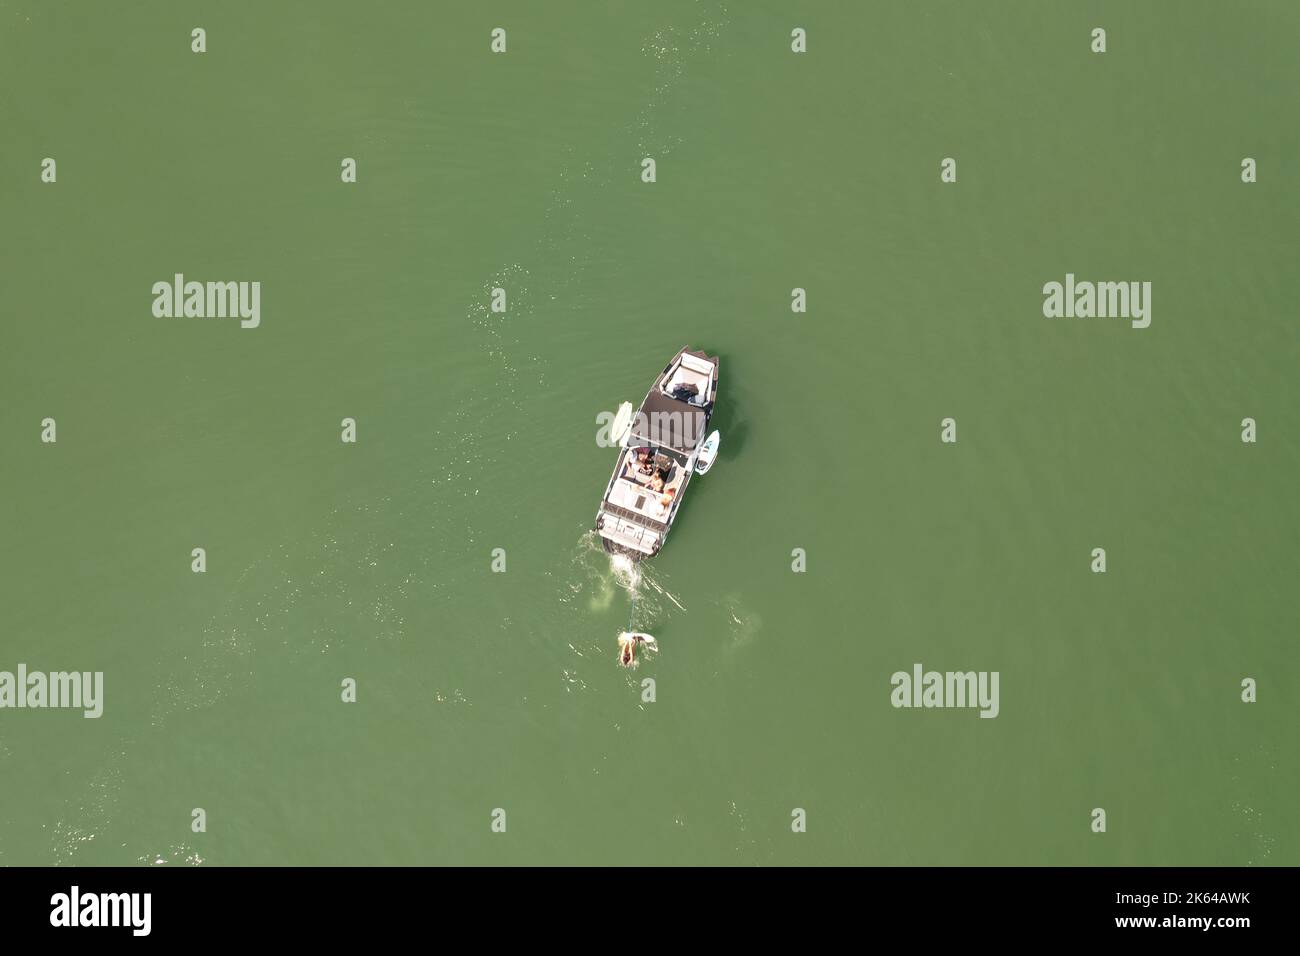 Vue de dessus d'un homme pratiquant le wakeboard remorqué par un hors-bord au milieu d'un lac. Banque D'Images